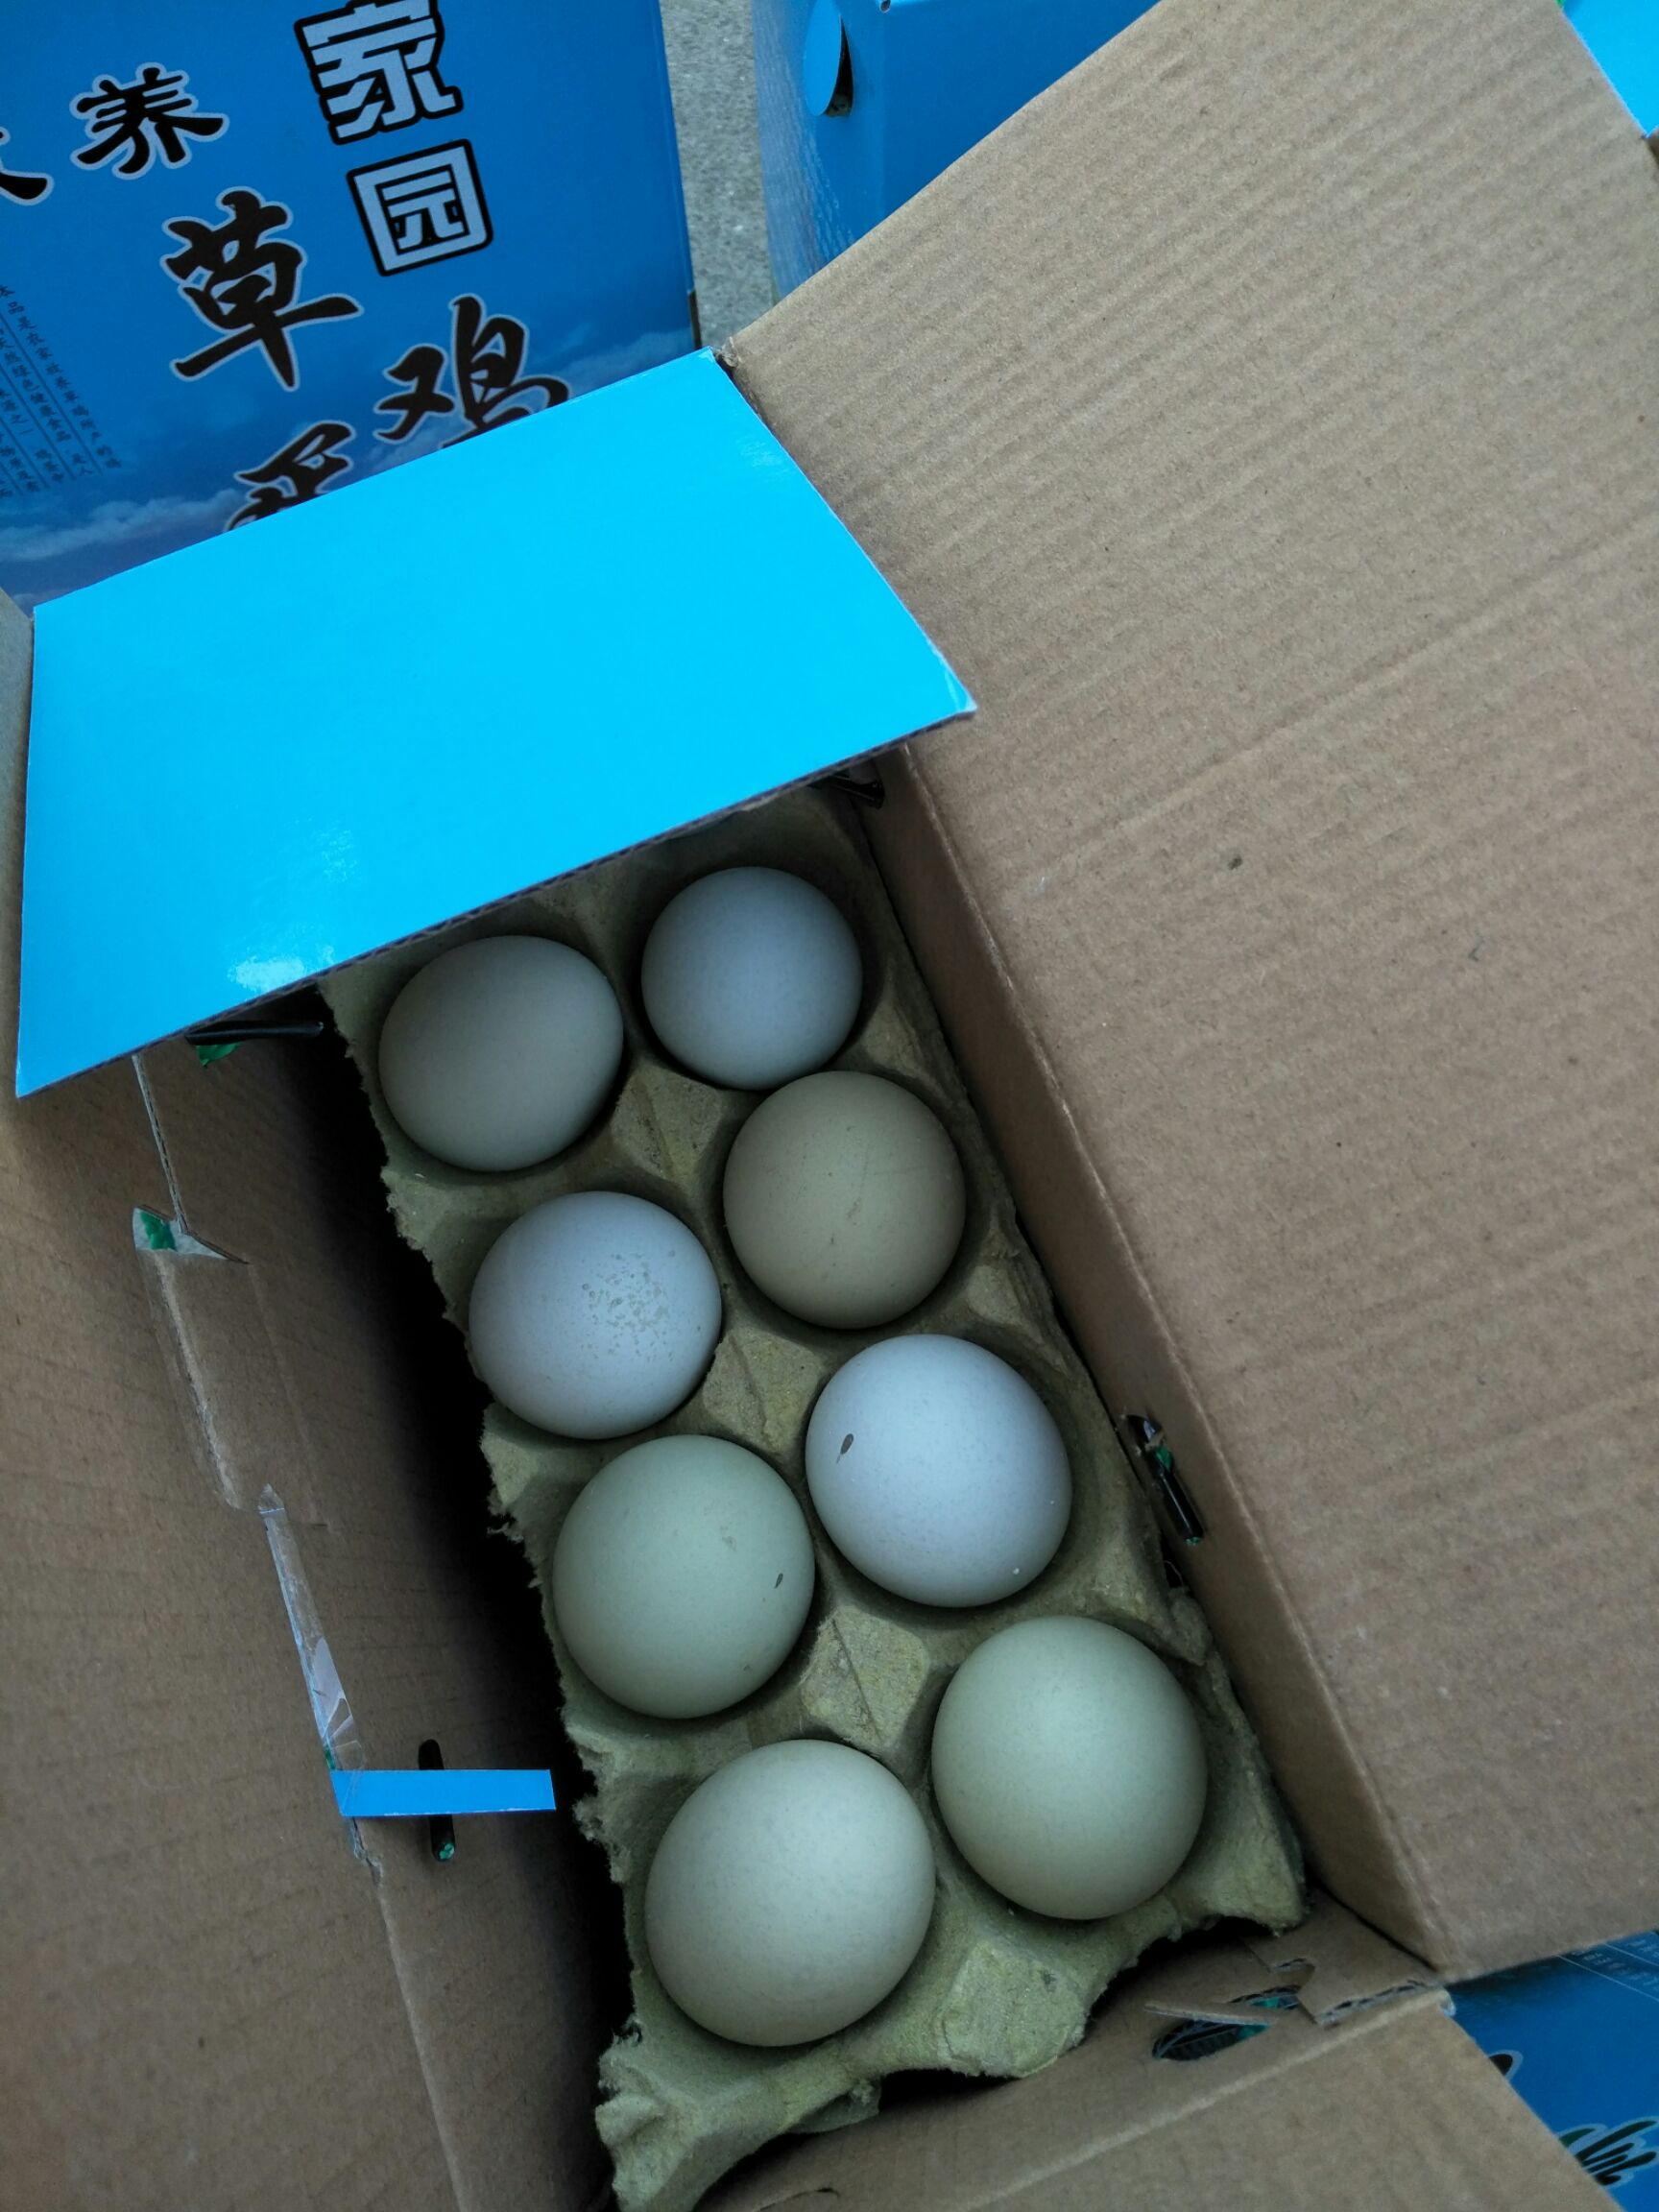 山东潍坊市高密市土鸡蛋最新产地行情趋势|产